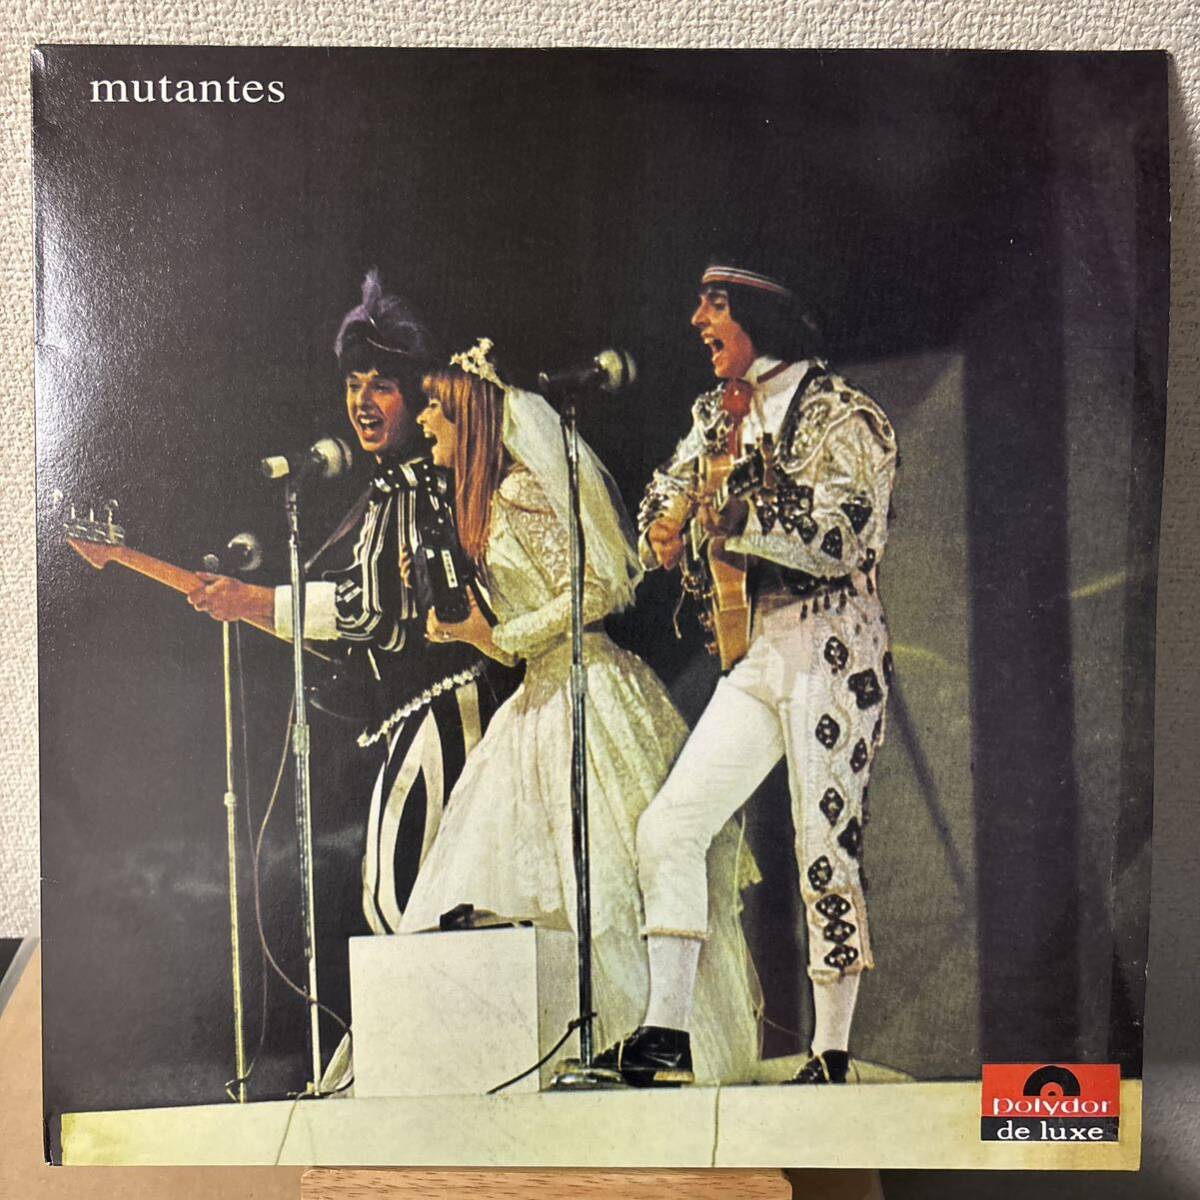 Mutantes レコード 2nd ムタンチス Rita Lee ヒタ・リー os LP same s.t. セカンド MPB vinyl アナログ_画像1